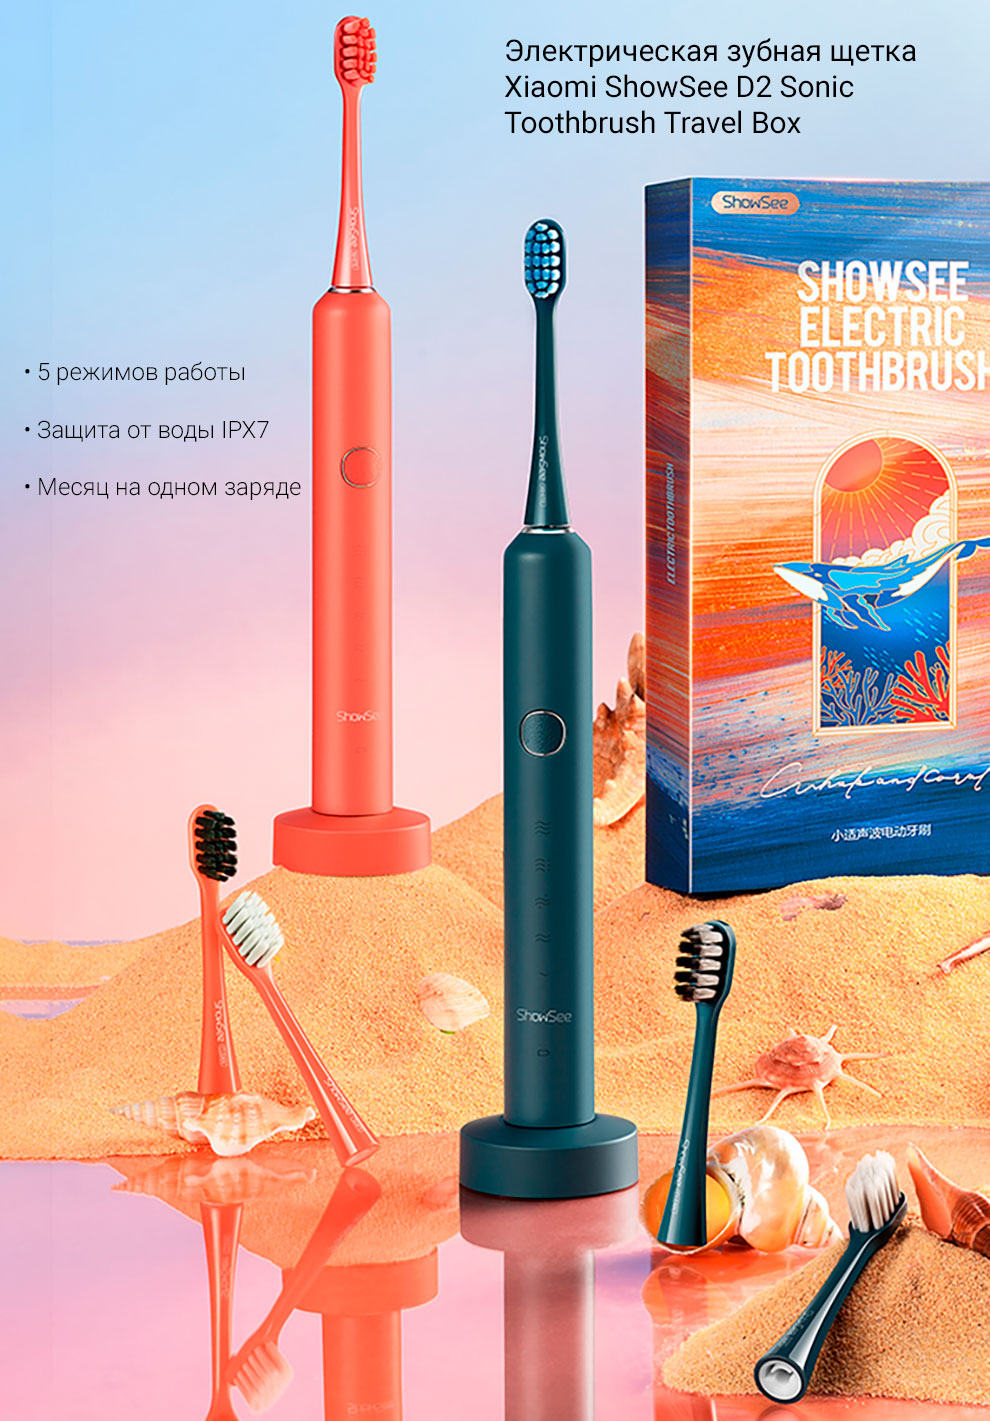 Электрическая зубная щетка Xiaomi ShowSee D2 Sonic Toothbrush Travel Box